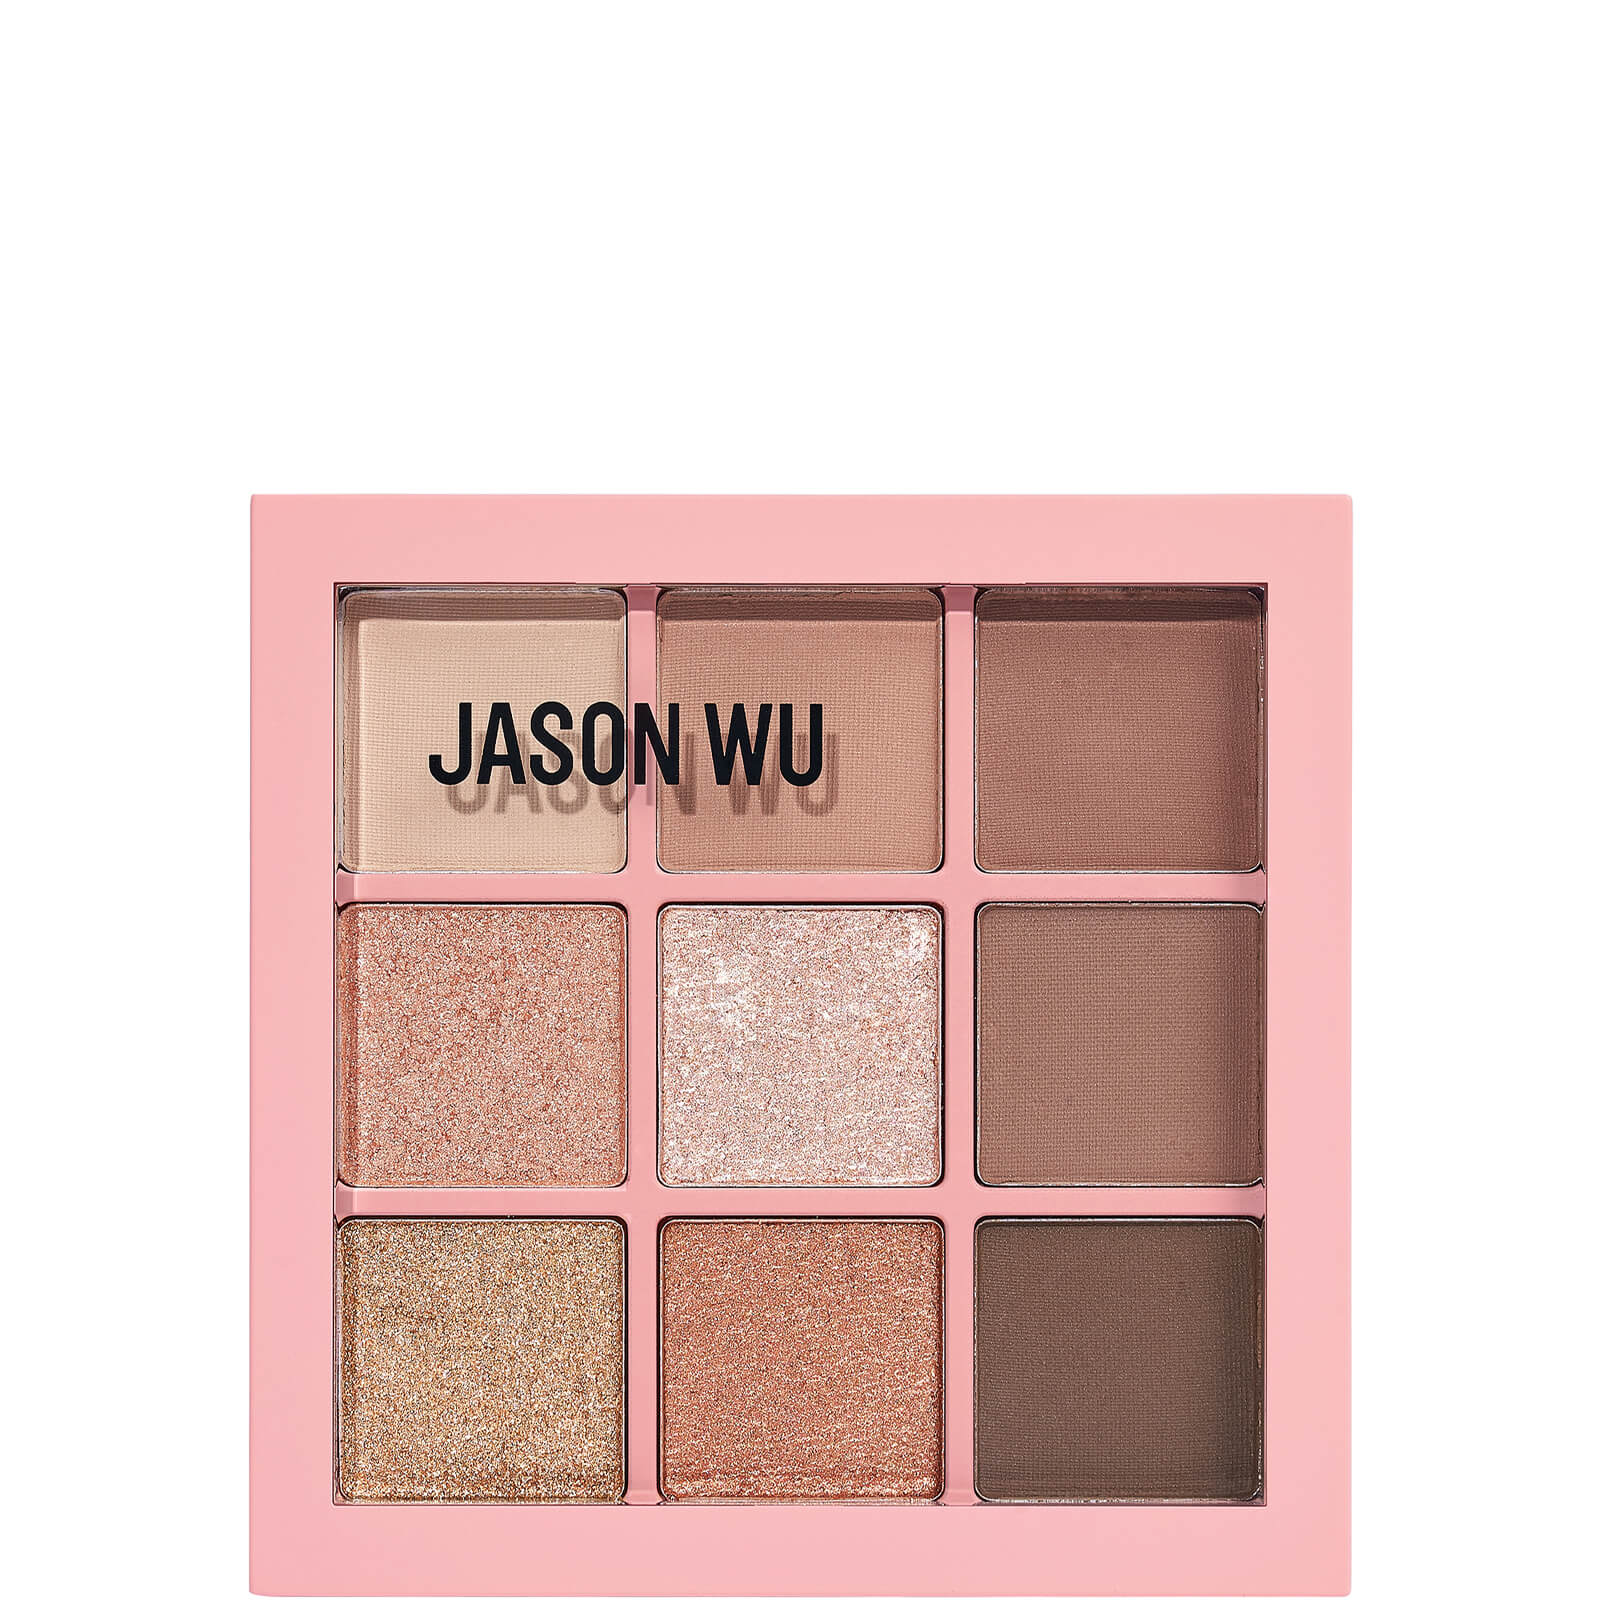 Jason Wu Beauty Flora 9 Palette 5.85g (various Shades) - Euphoria